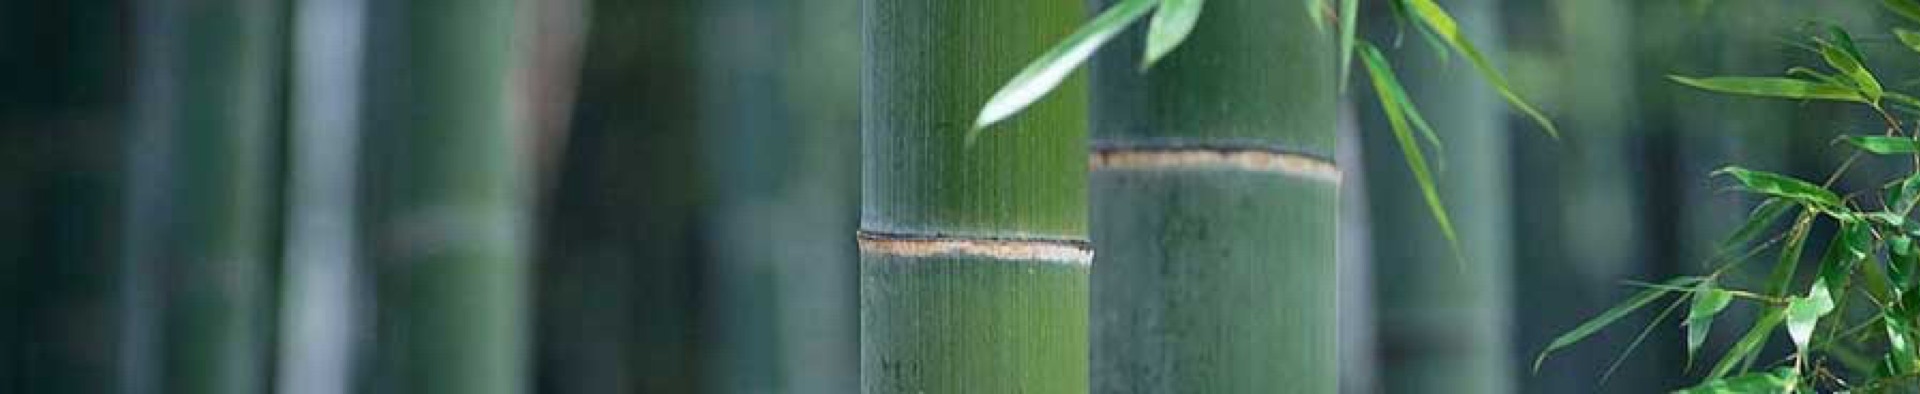 Taikiken bamboo top banner green